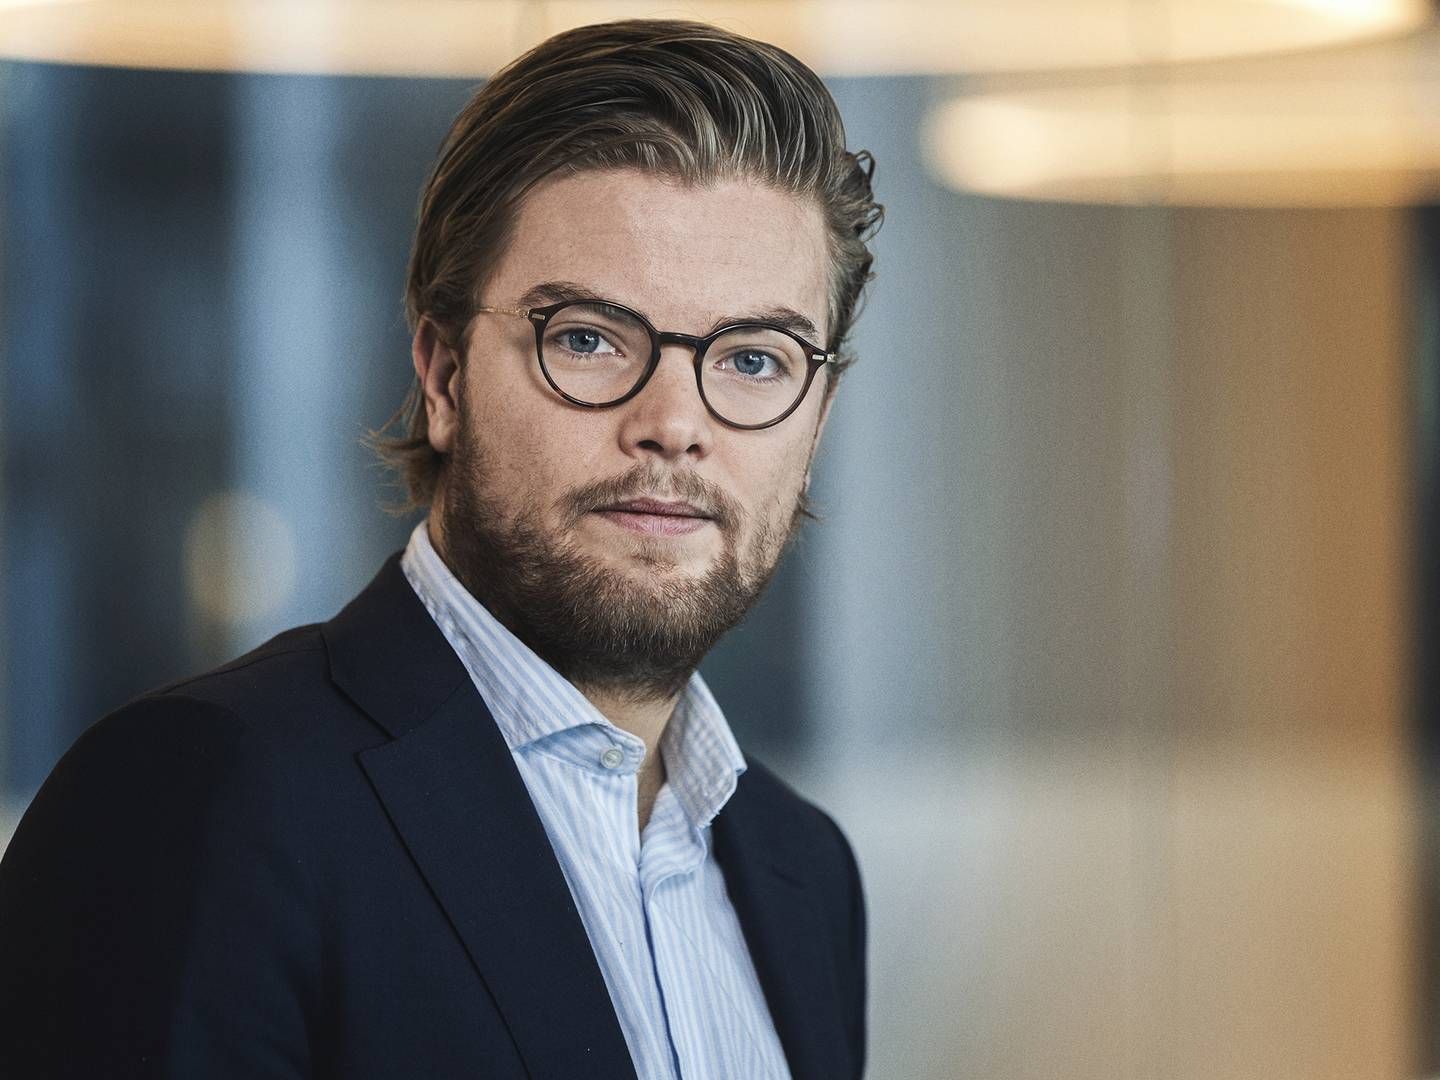 TIL HEIMSTADEN: Andreas Steno Larsen har fått ny jobb etter å ha sluttet i Nordea etter omstridt analyse. | Foto: PR/Nordea